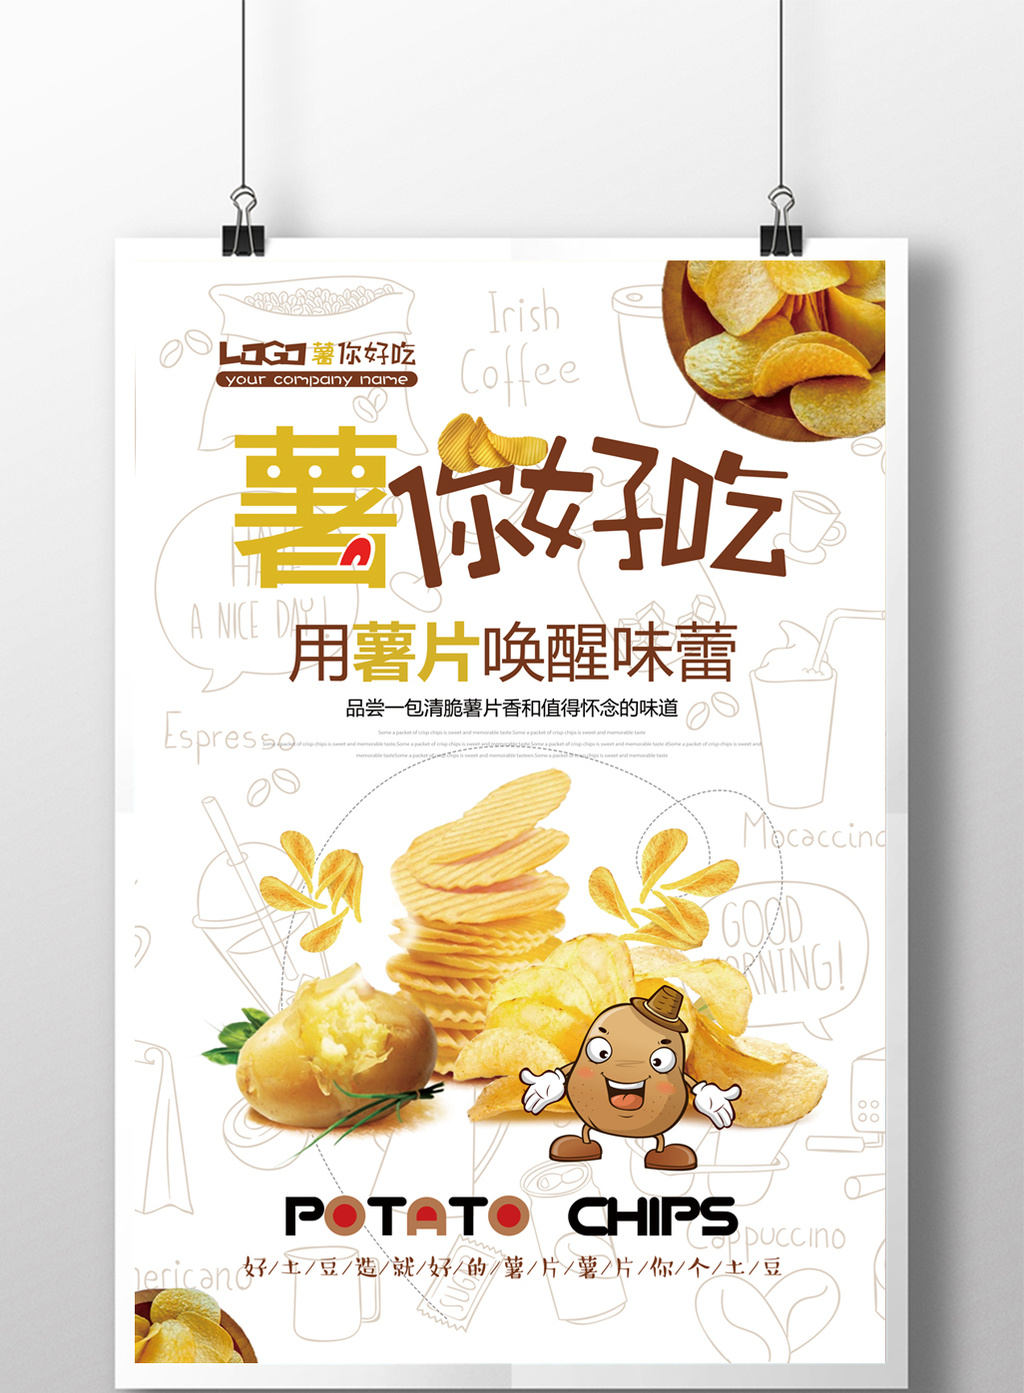 包图 广告设计 海报 【psd】 美味美食薯片活动促销宣传海报设计  所